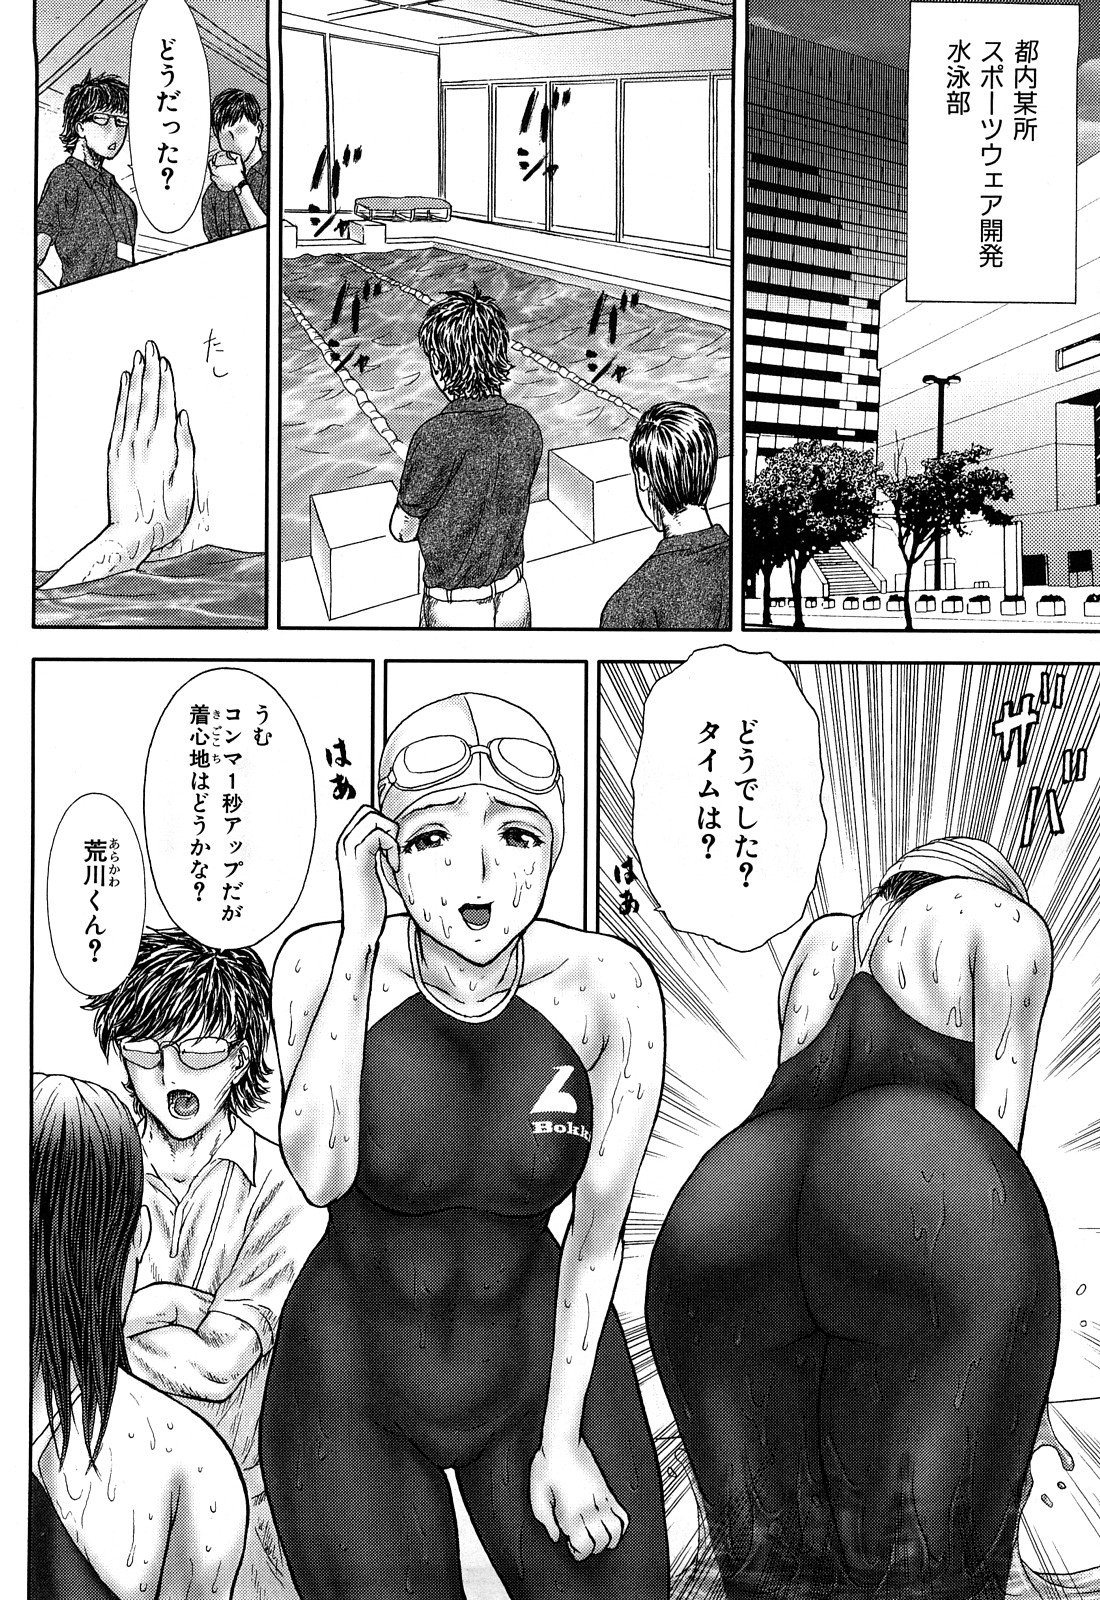 [EXTREME] Tsuma No Shizuku ~Nikuyome Miyuki 29 sai~ page 30 full